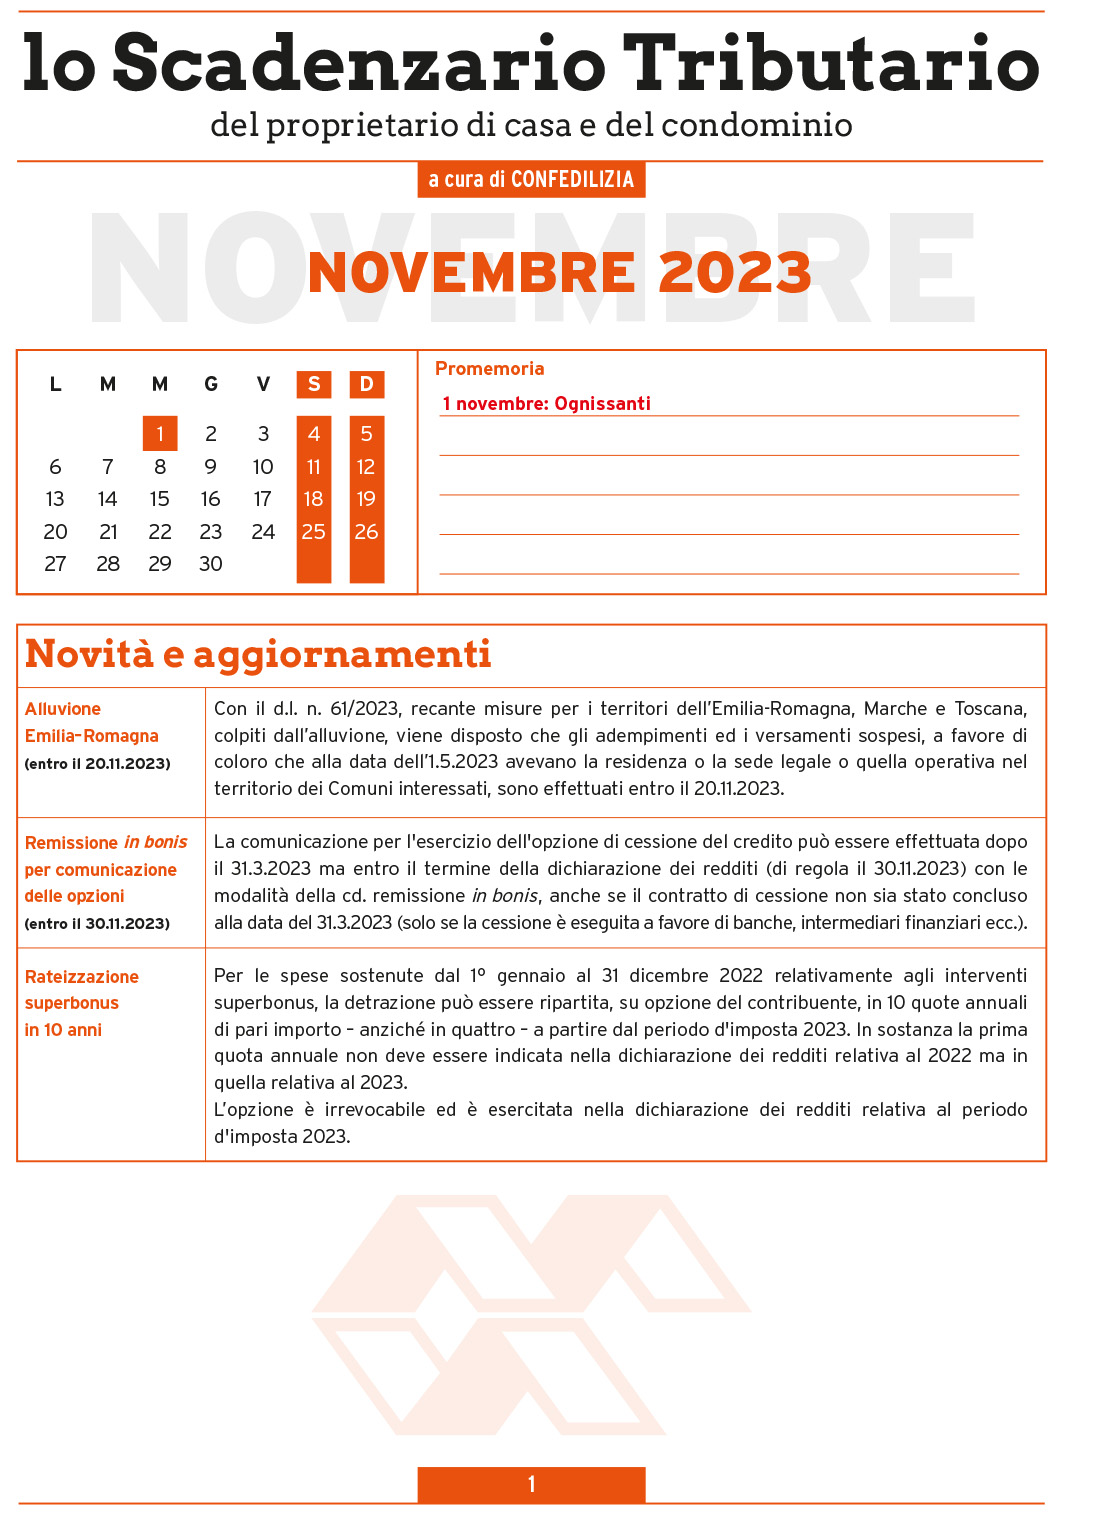 SCADENZARIO TRIBUTARIO NOVEMBRE 2023 (10 pagg.)-1